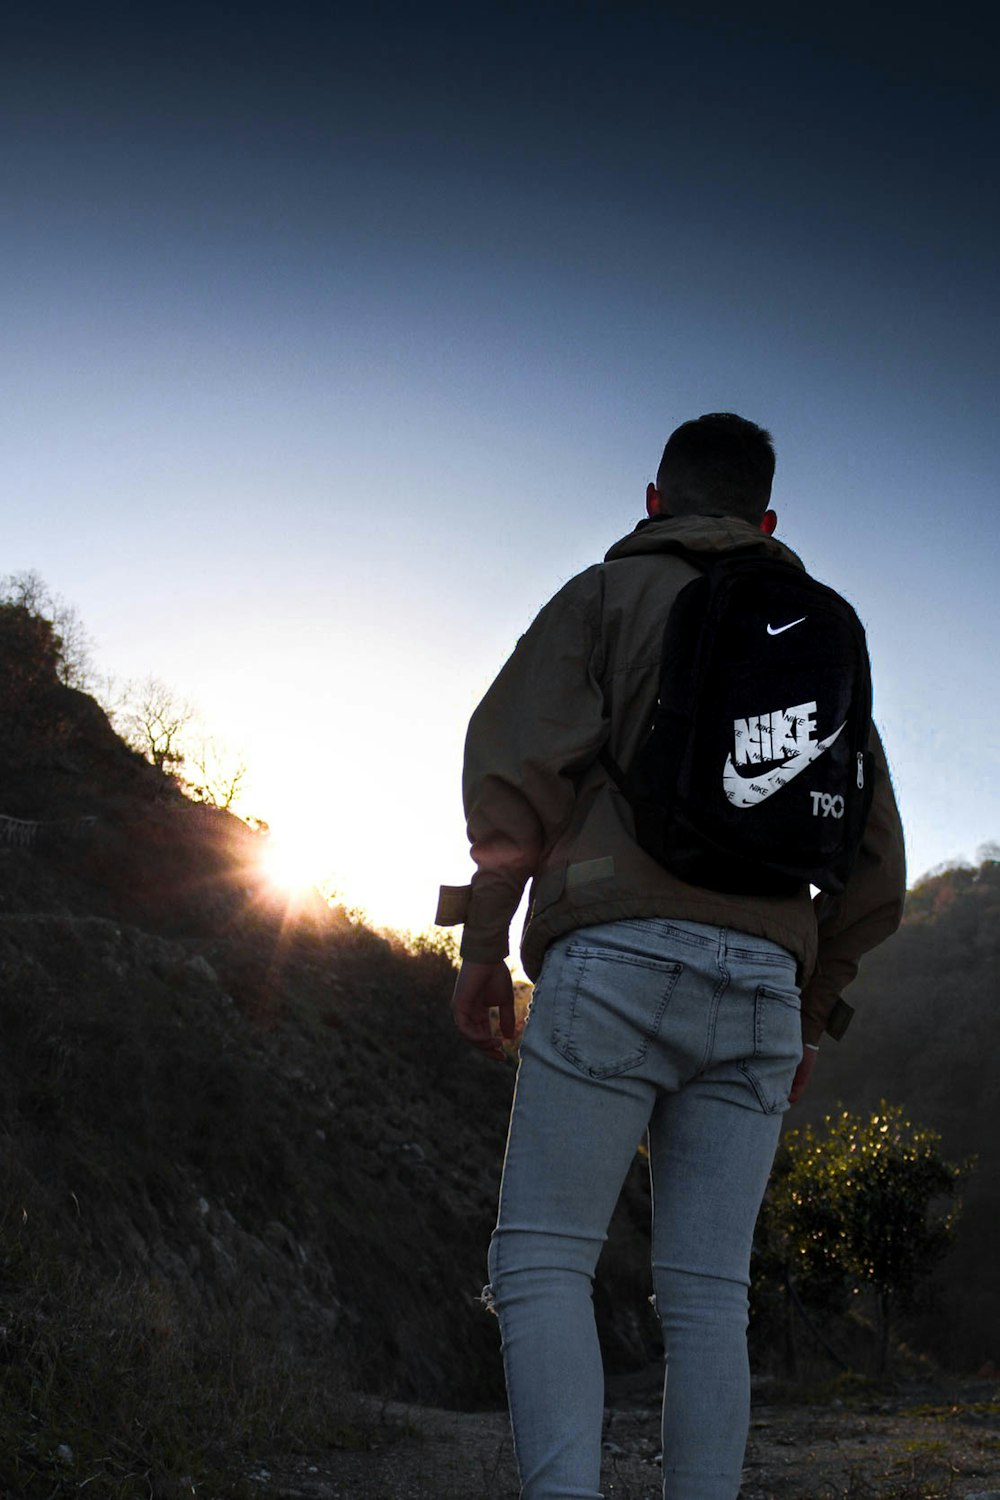 Excursión compilar Fraternidad Foto Hombre con mochila nike negra – Imagen Nike gratis en Unsplash